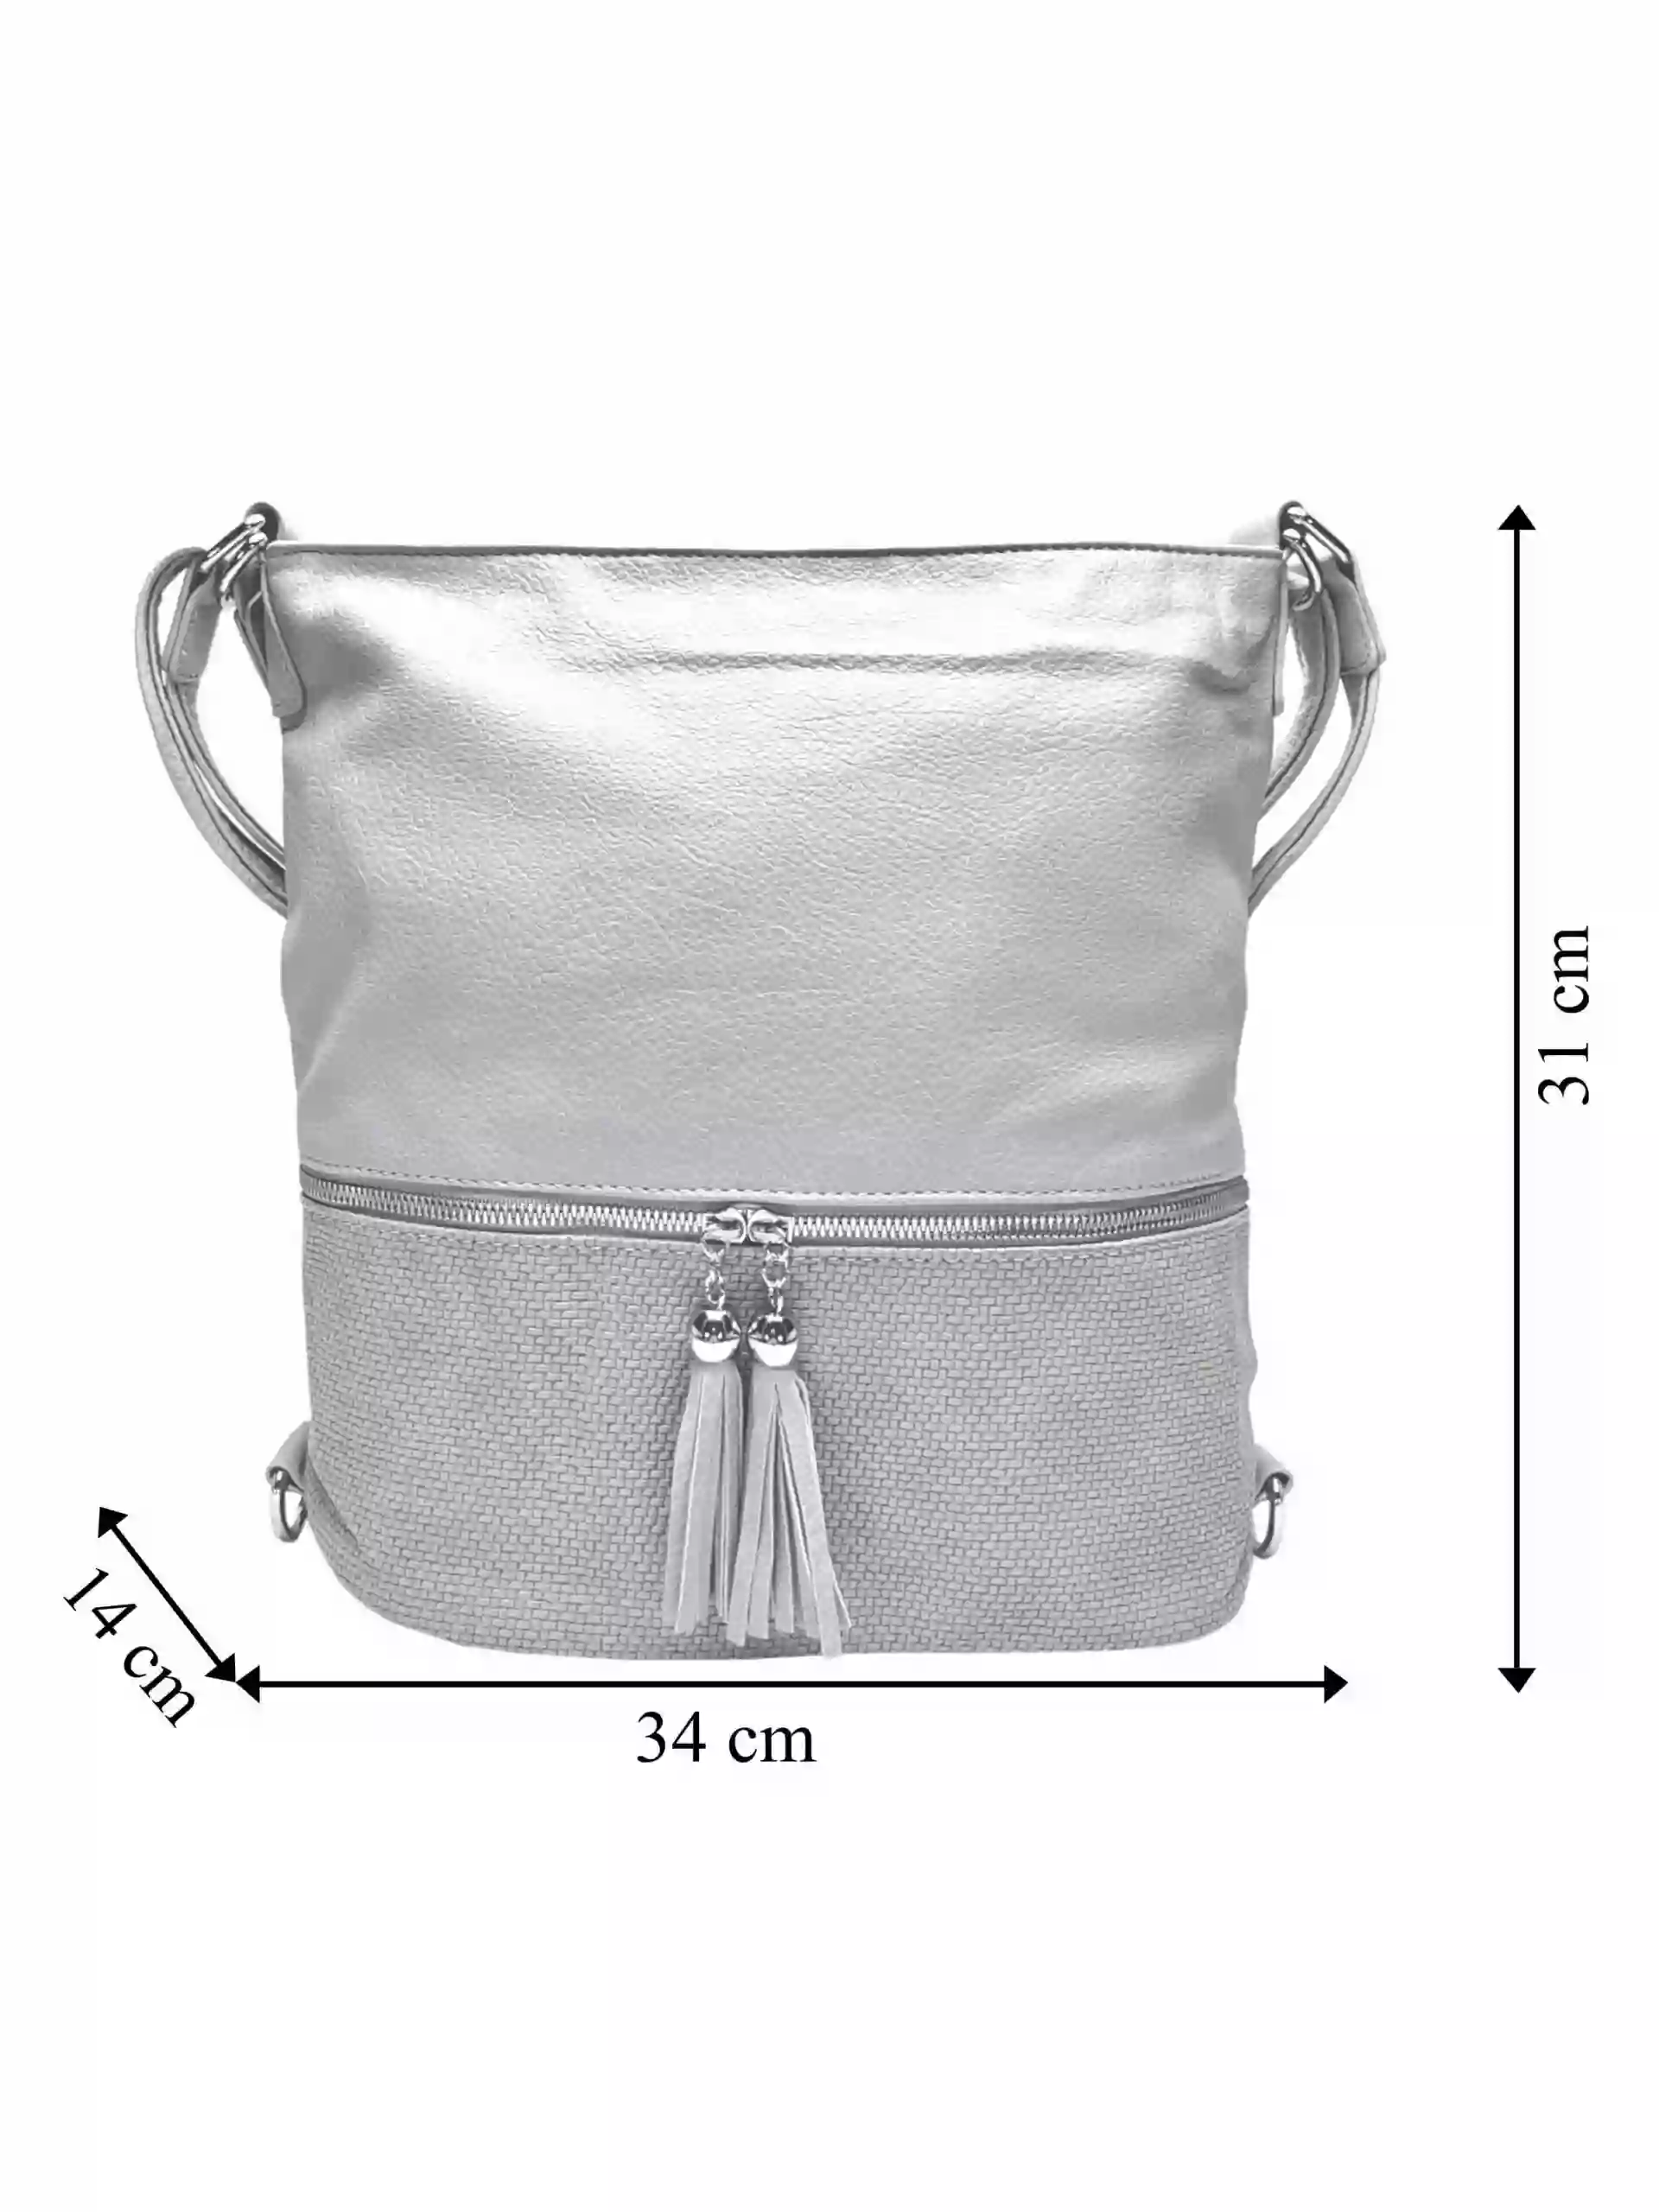 Střední světle šedý kabelko-batoh 2v1 s třásněmi, Bella Belly, 5394, přední strana kabelko-batohu 2v1 s rozměry